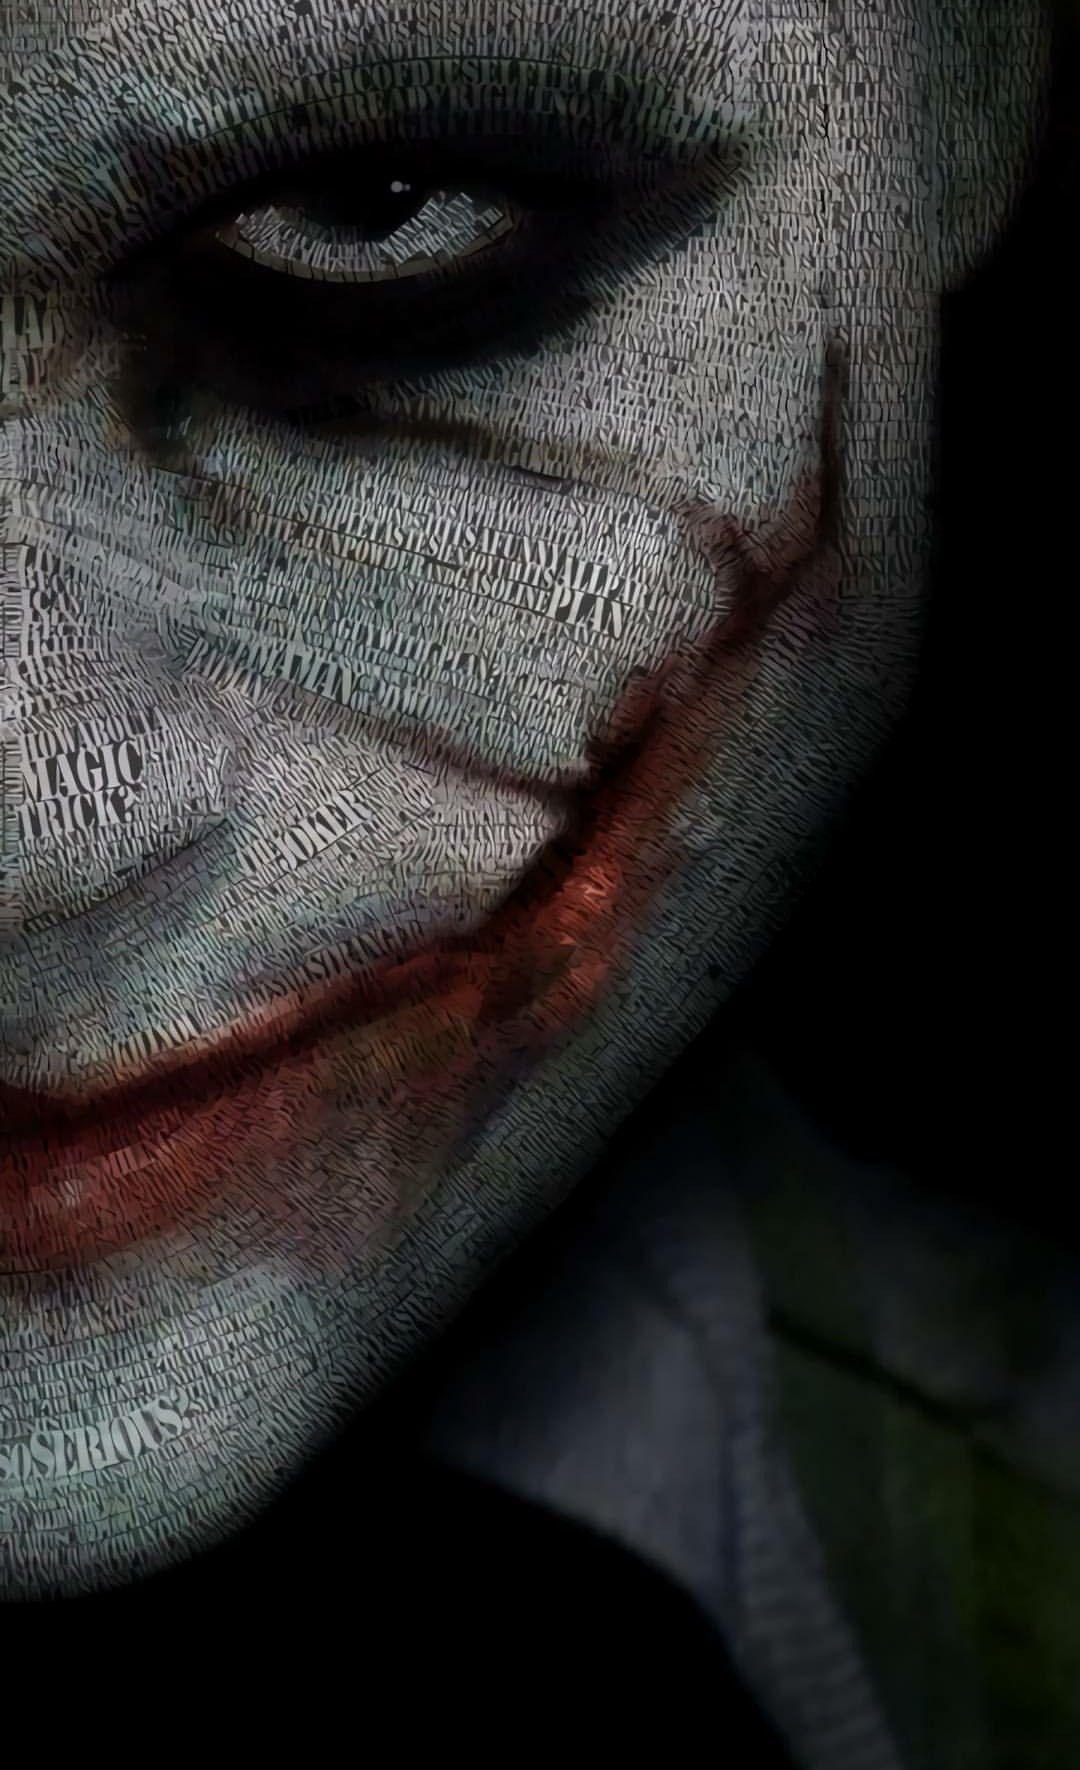 Joker Face Wallpapers - Top Free Joker Face Backgrounds - WallpaperAccess